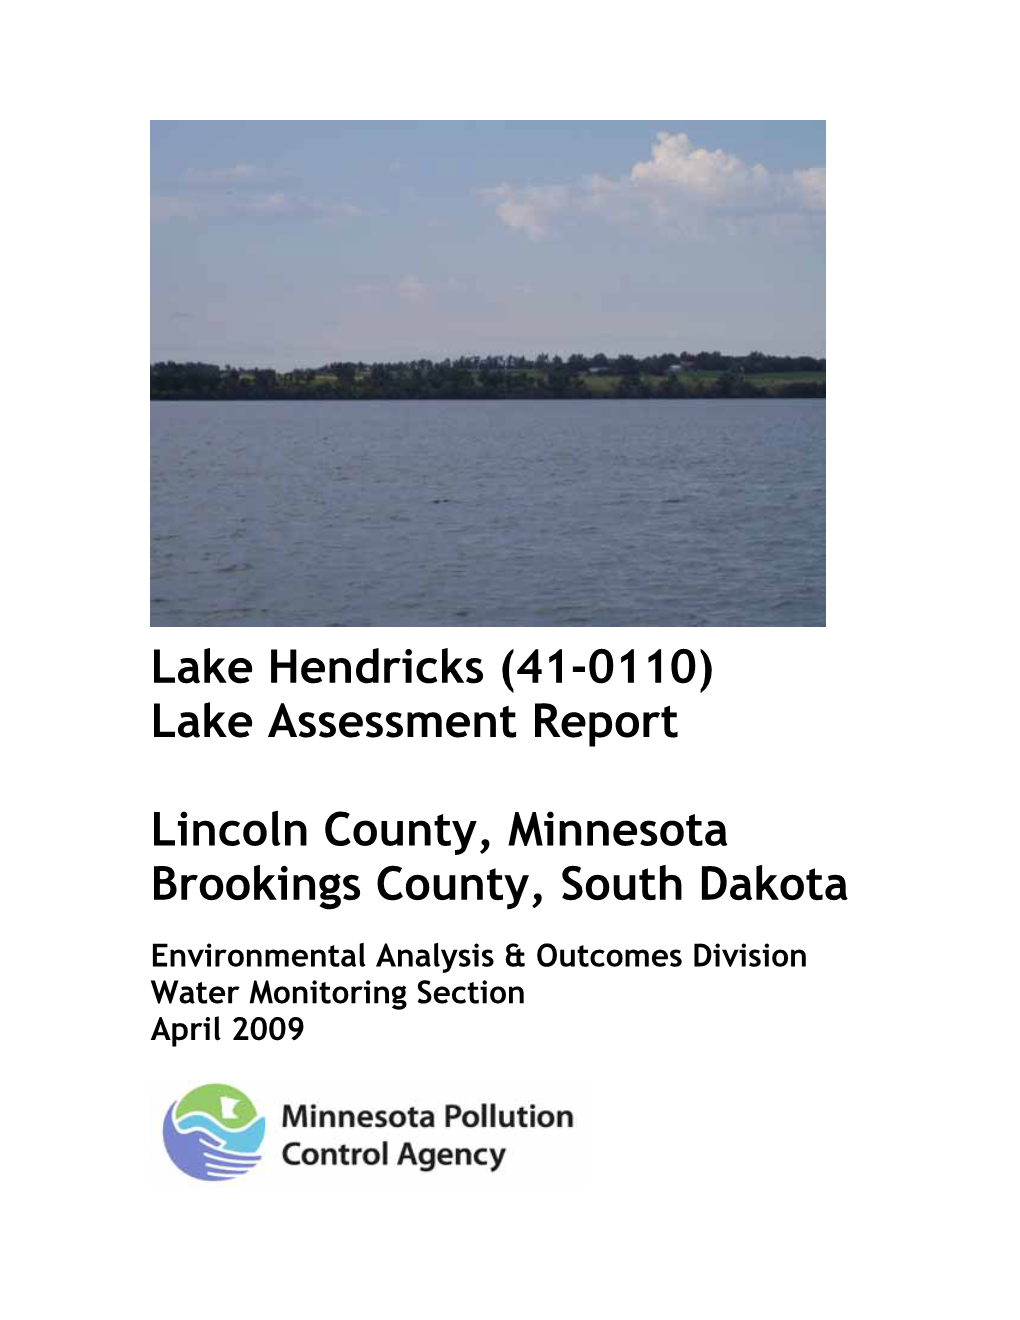 Lake Hendricks (41-0110) Lake Assessment Report (2009)